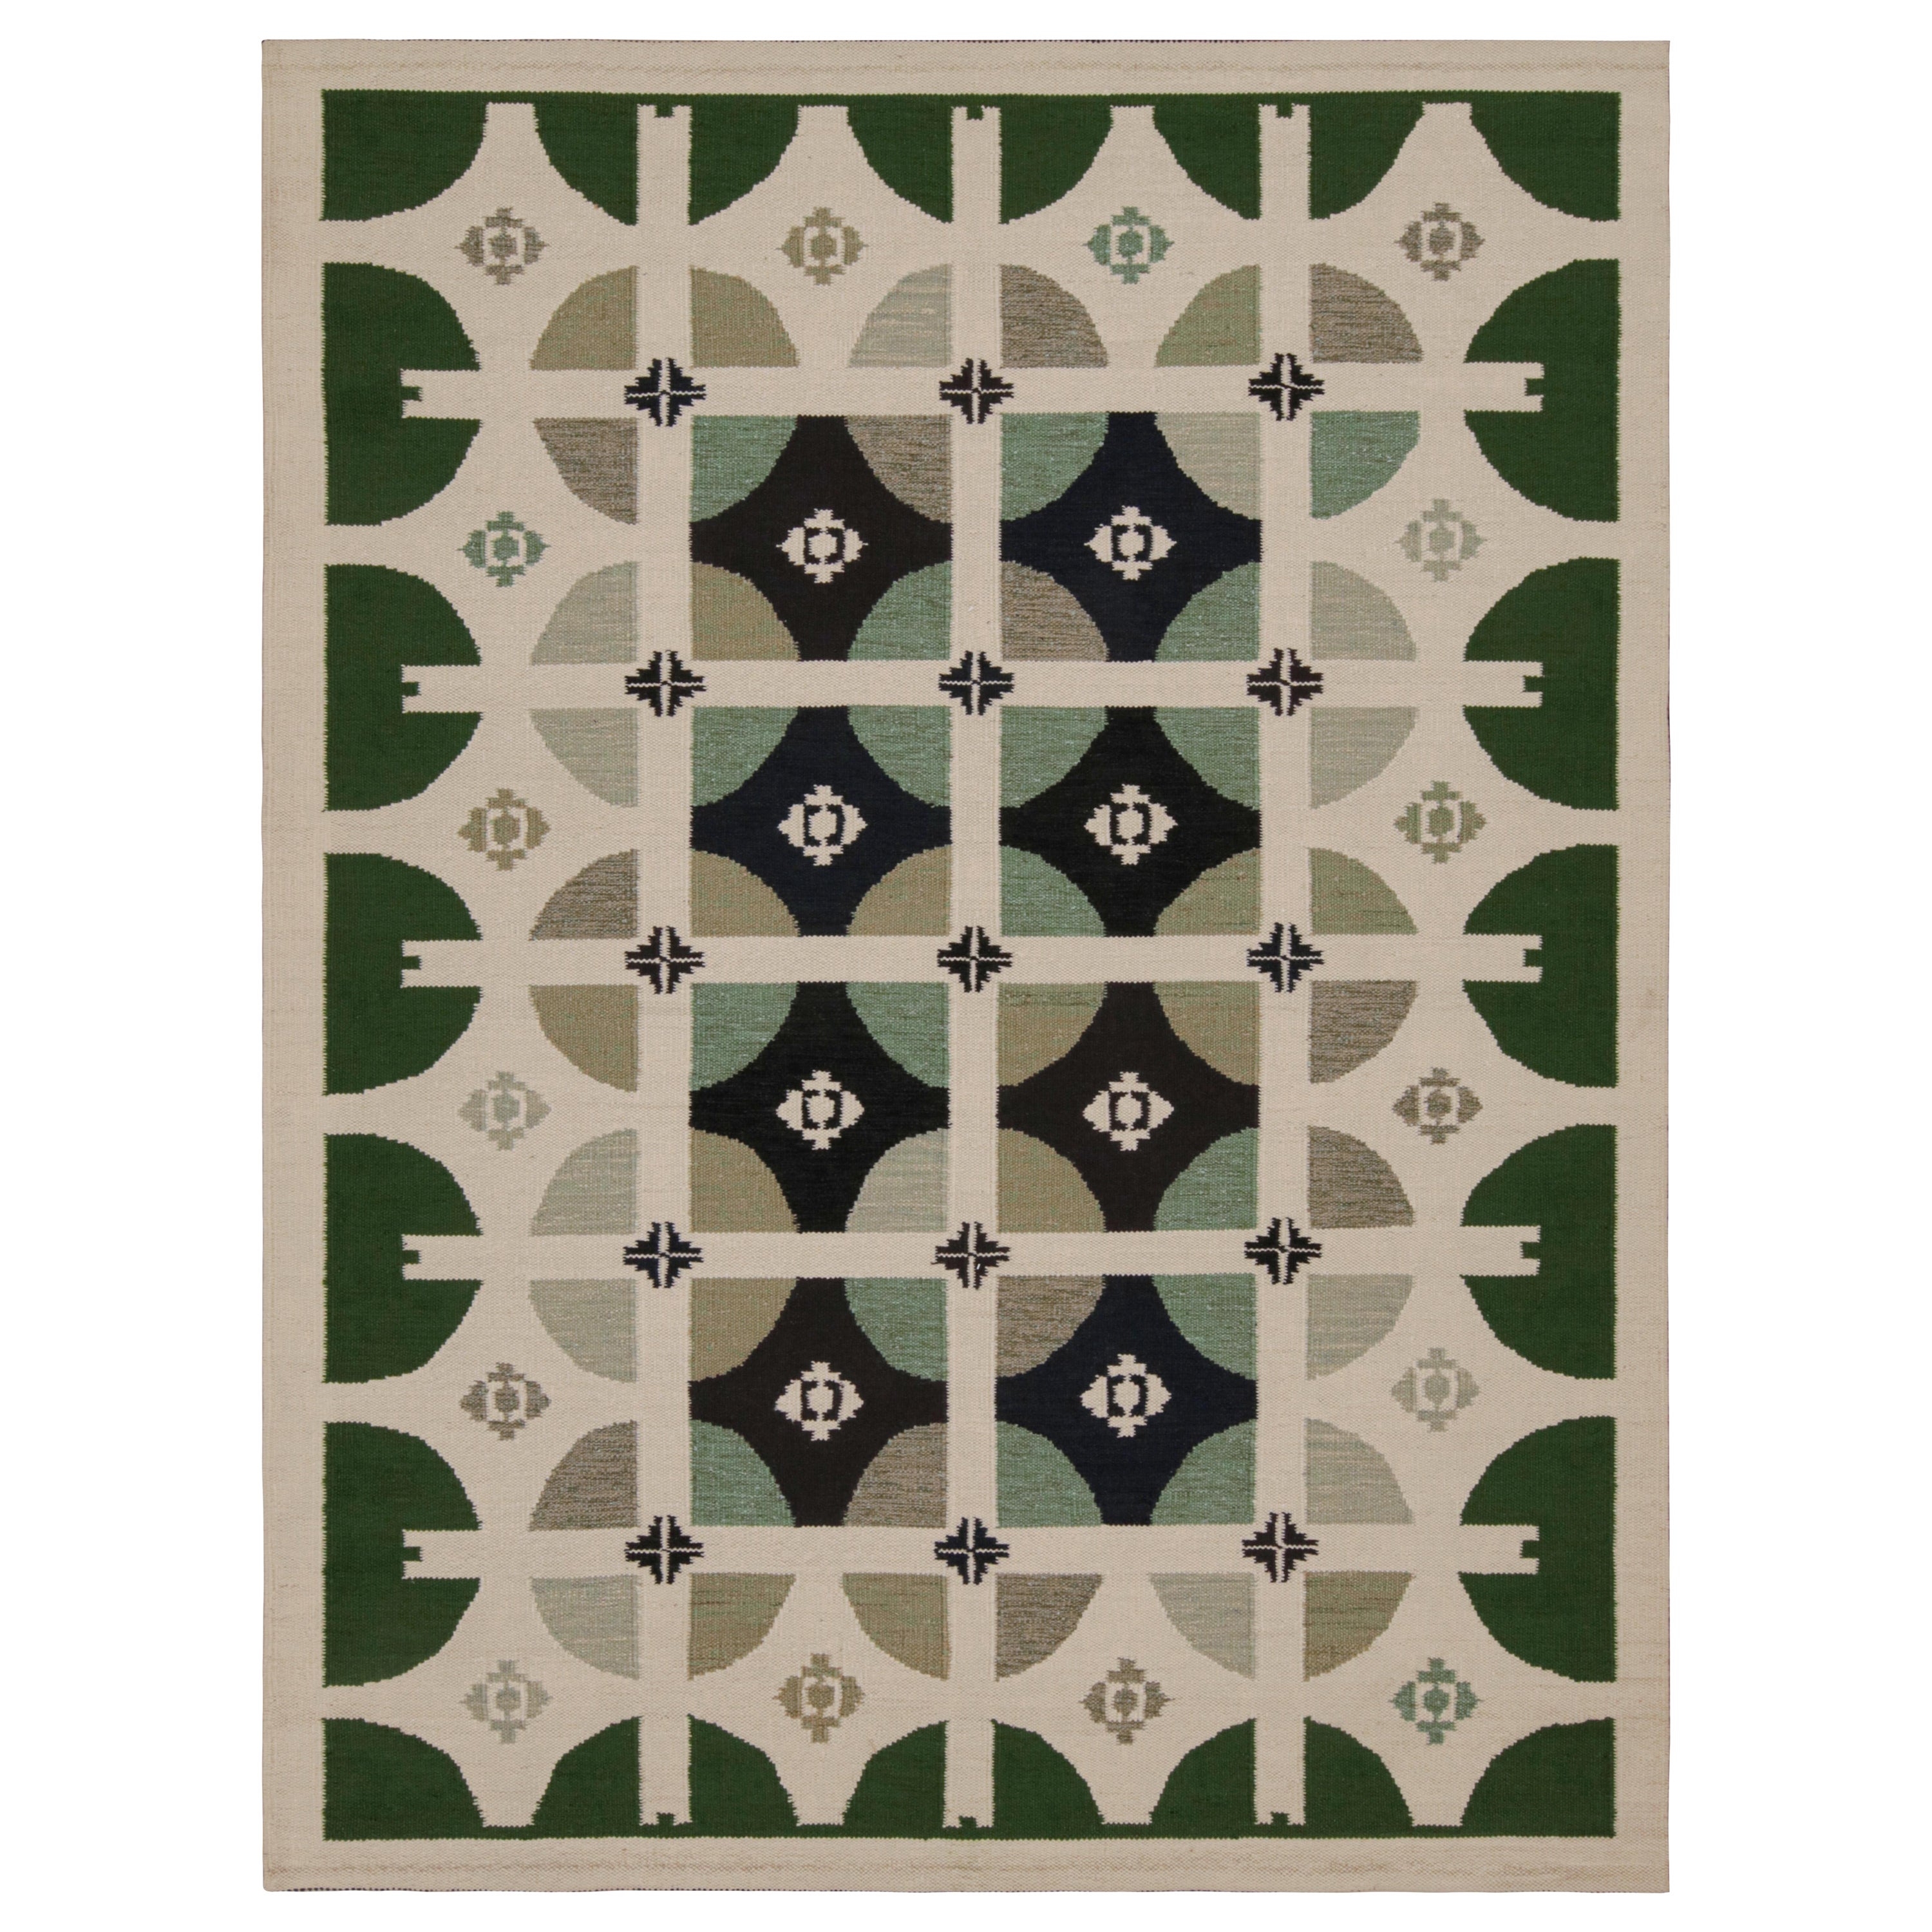 Rug & Kilim's skandinavischer Stil mit grünen, weißen und schwarzen Mustern